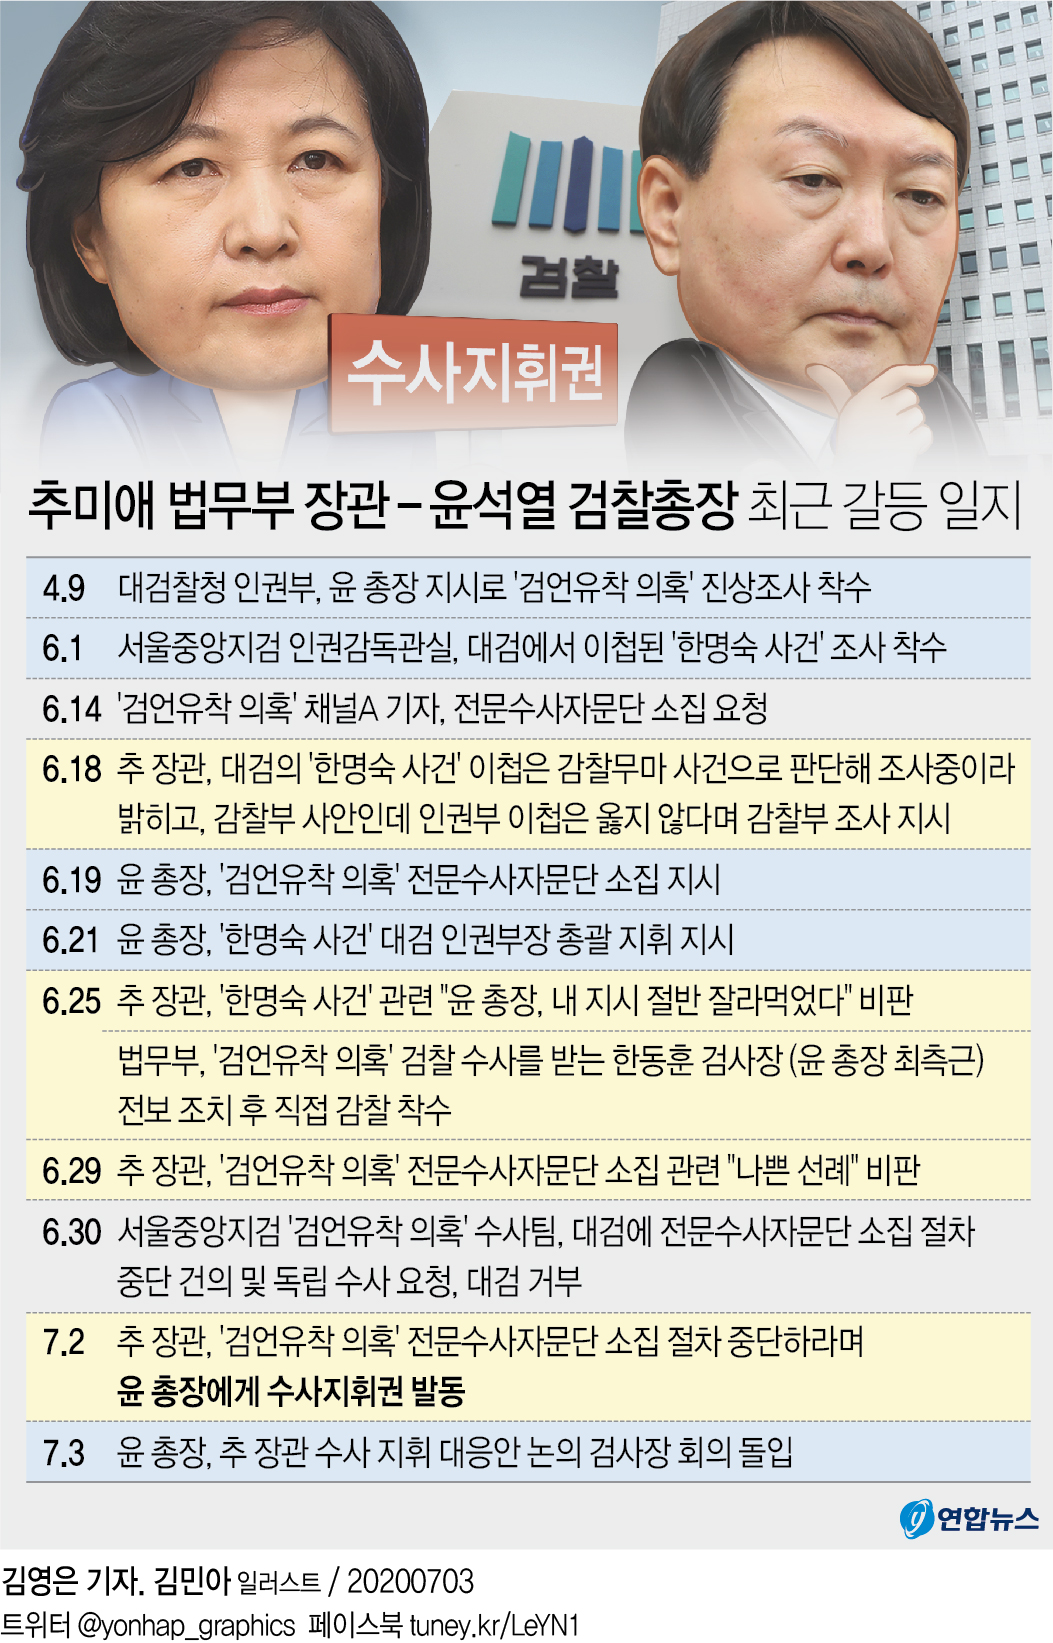 [그래픽] 추미애 법무부 장관 - 윤석열 검찰총장 최근 갈등 일지